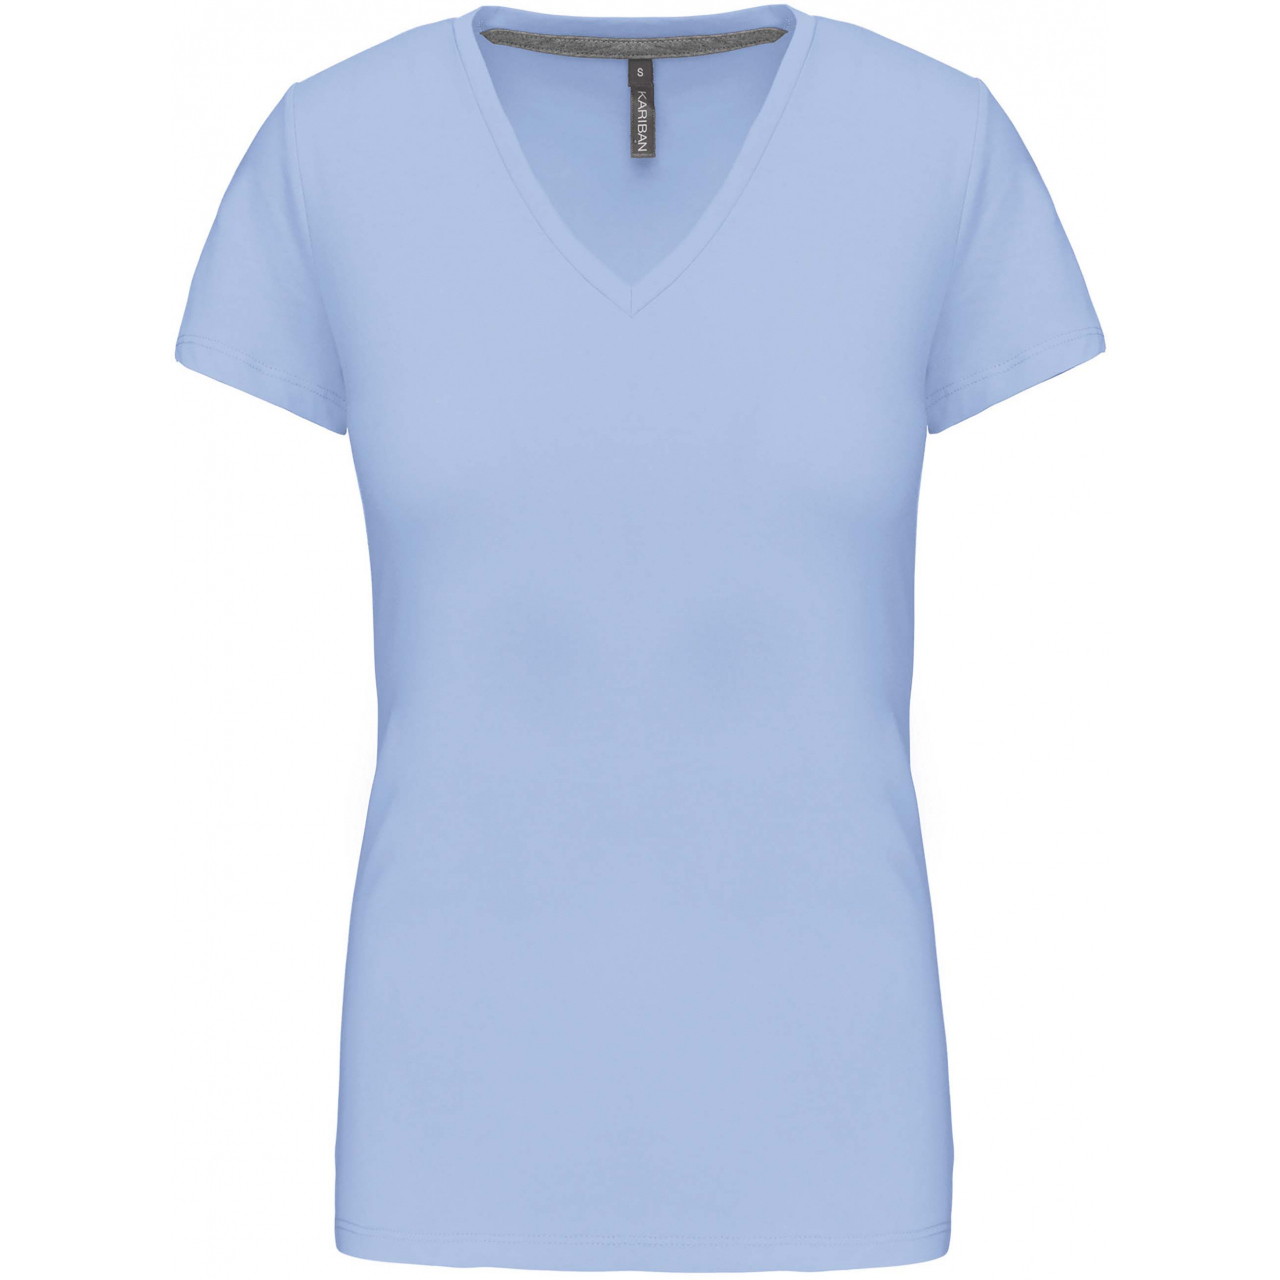 Dámské tričko Kariban V-neck s krátkým rukávem - světle modré, M